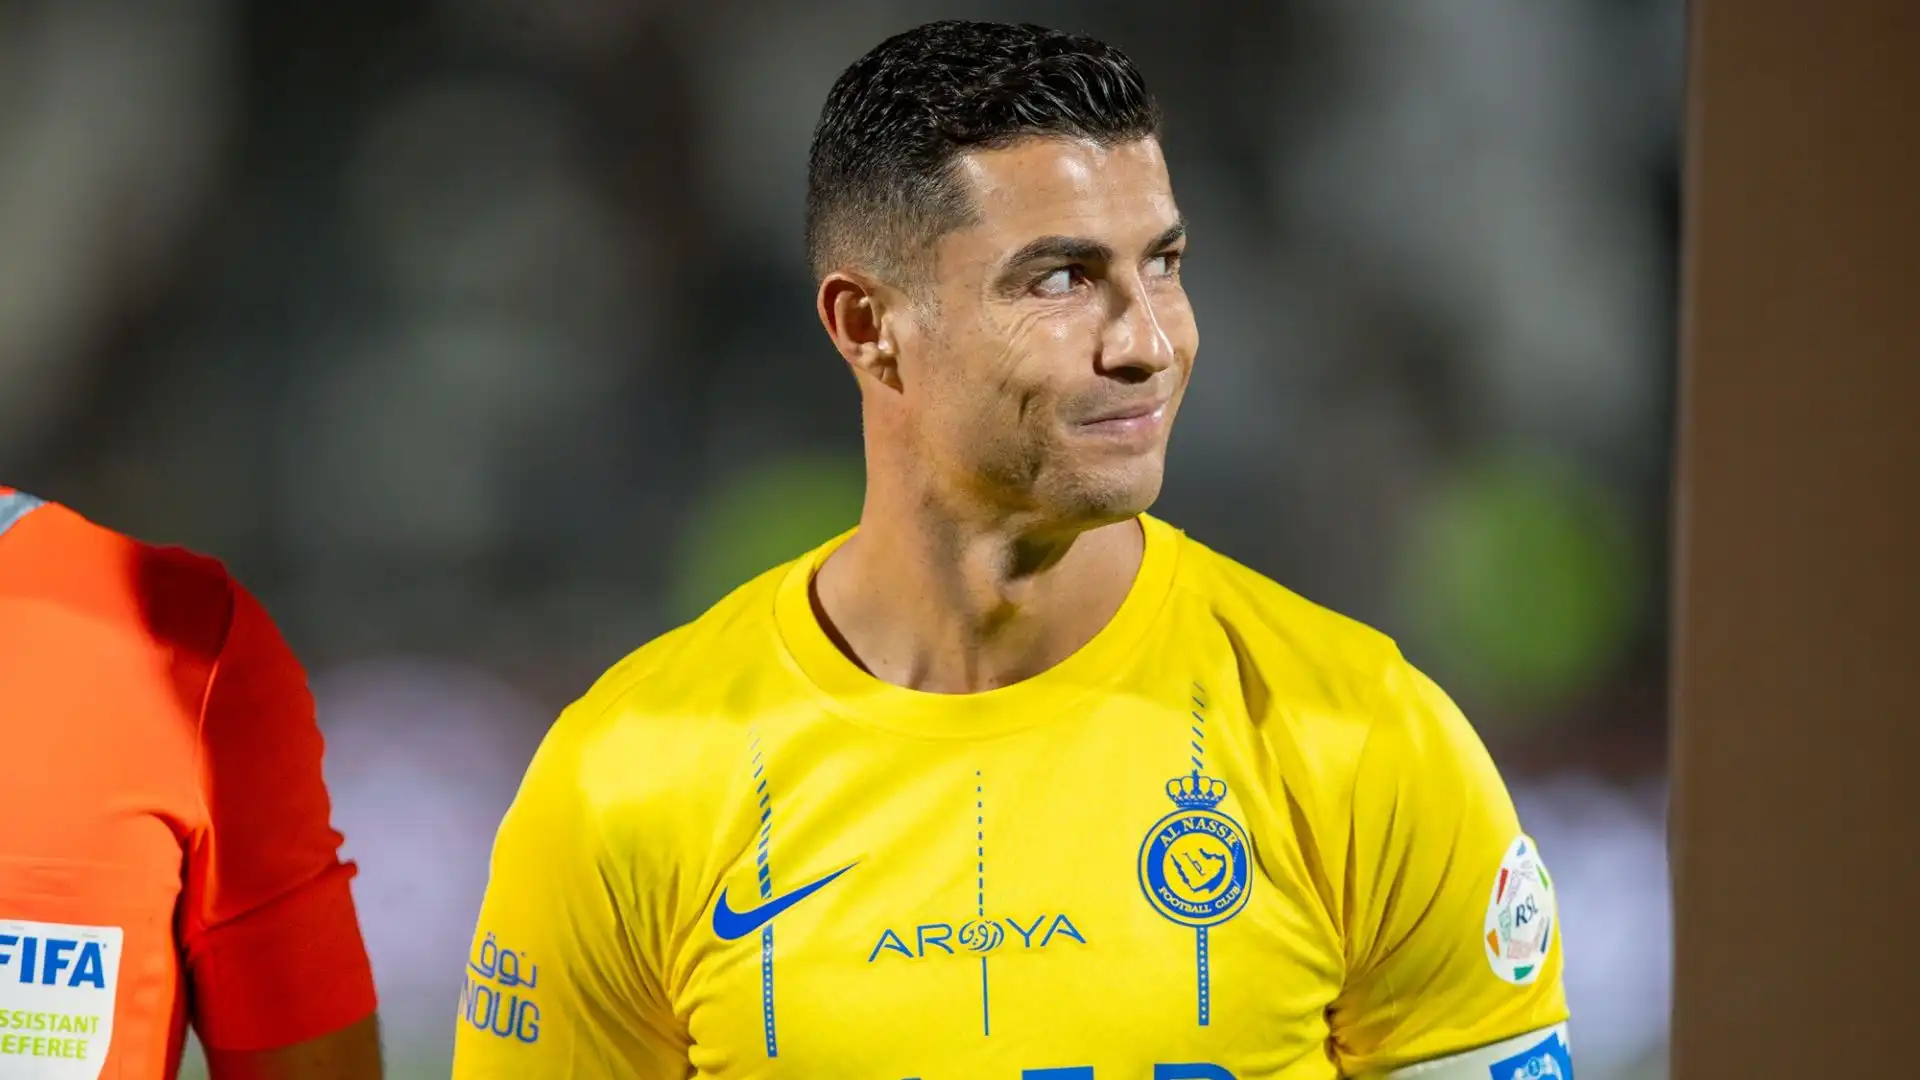 L'attaccante portoghese ha fatto un brutto gesto al termine della partita dell'Al Nassr contro l'Al Shabab